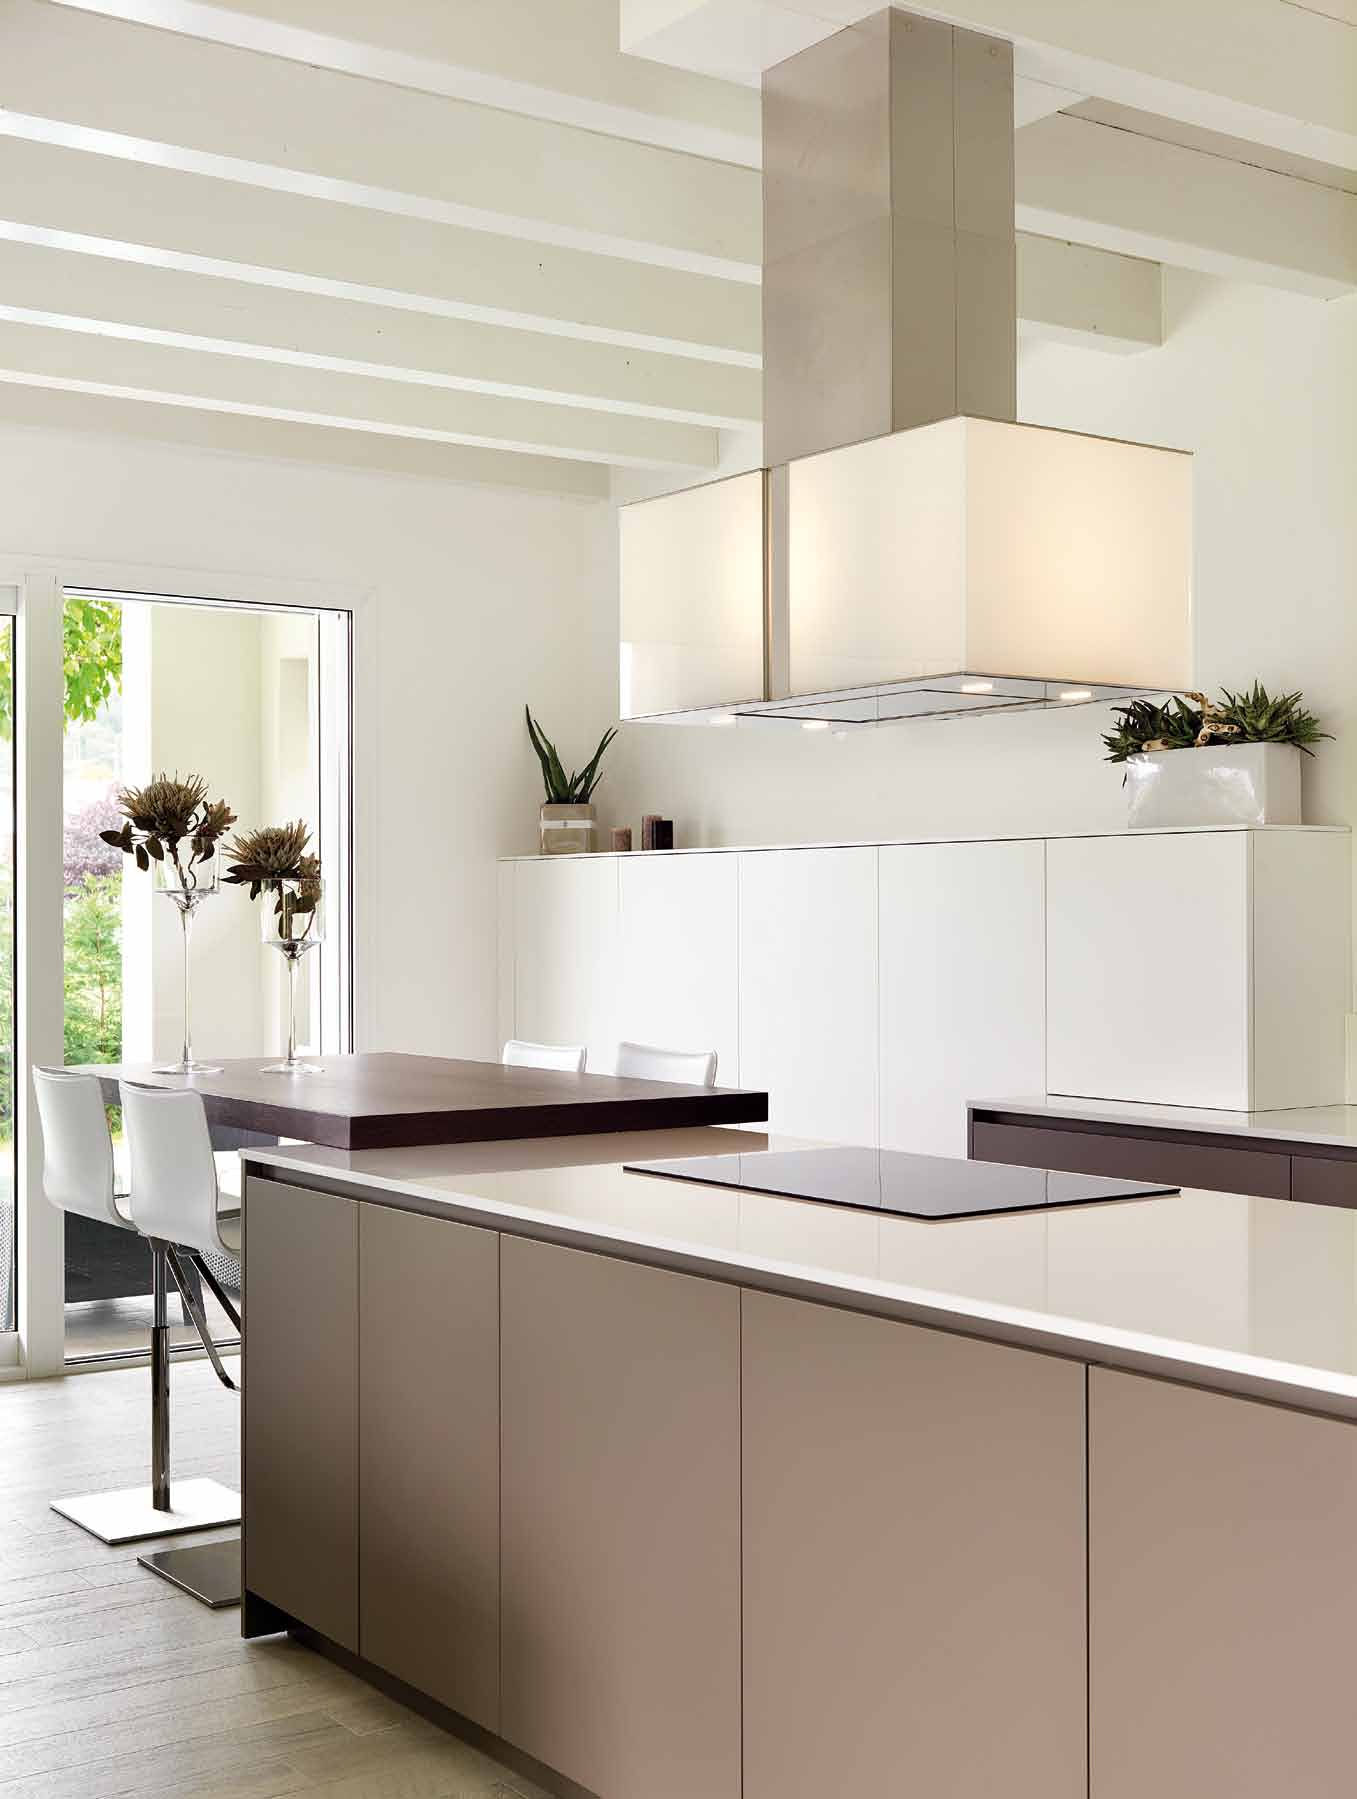 Visione prospettica dello spazio cucina: ad incasso la composizione a colonne laccata bianco opaco con elettrodomestici in acciaio.